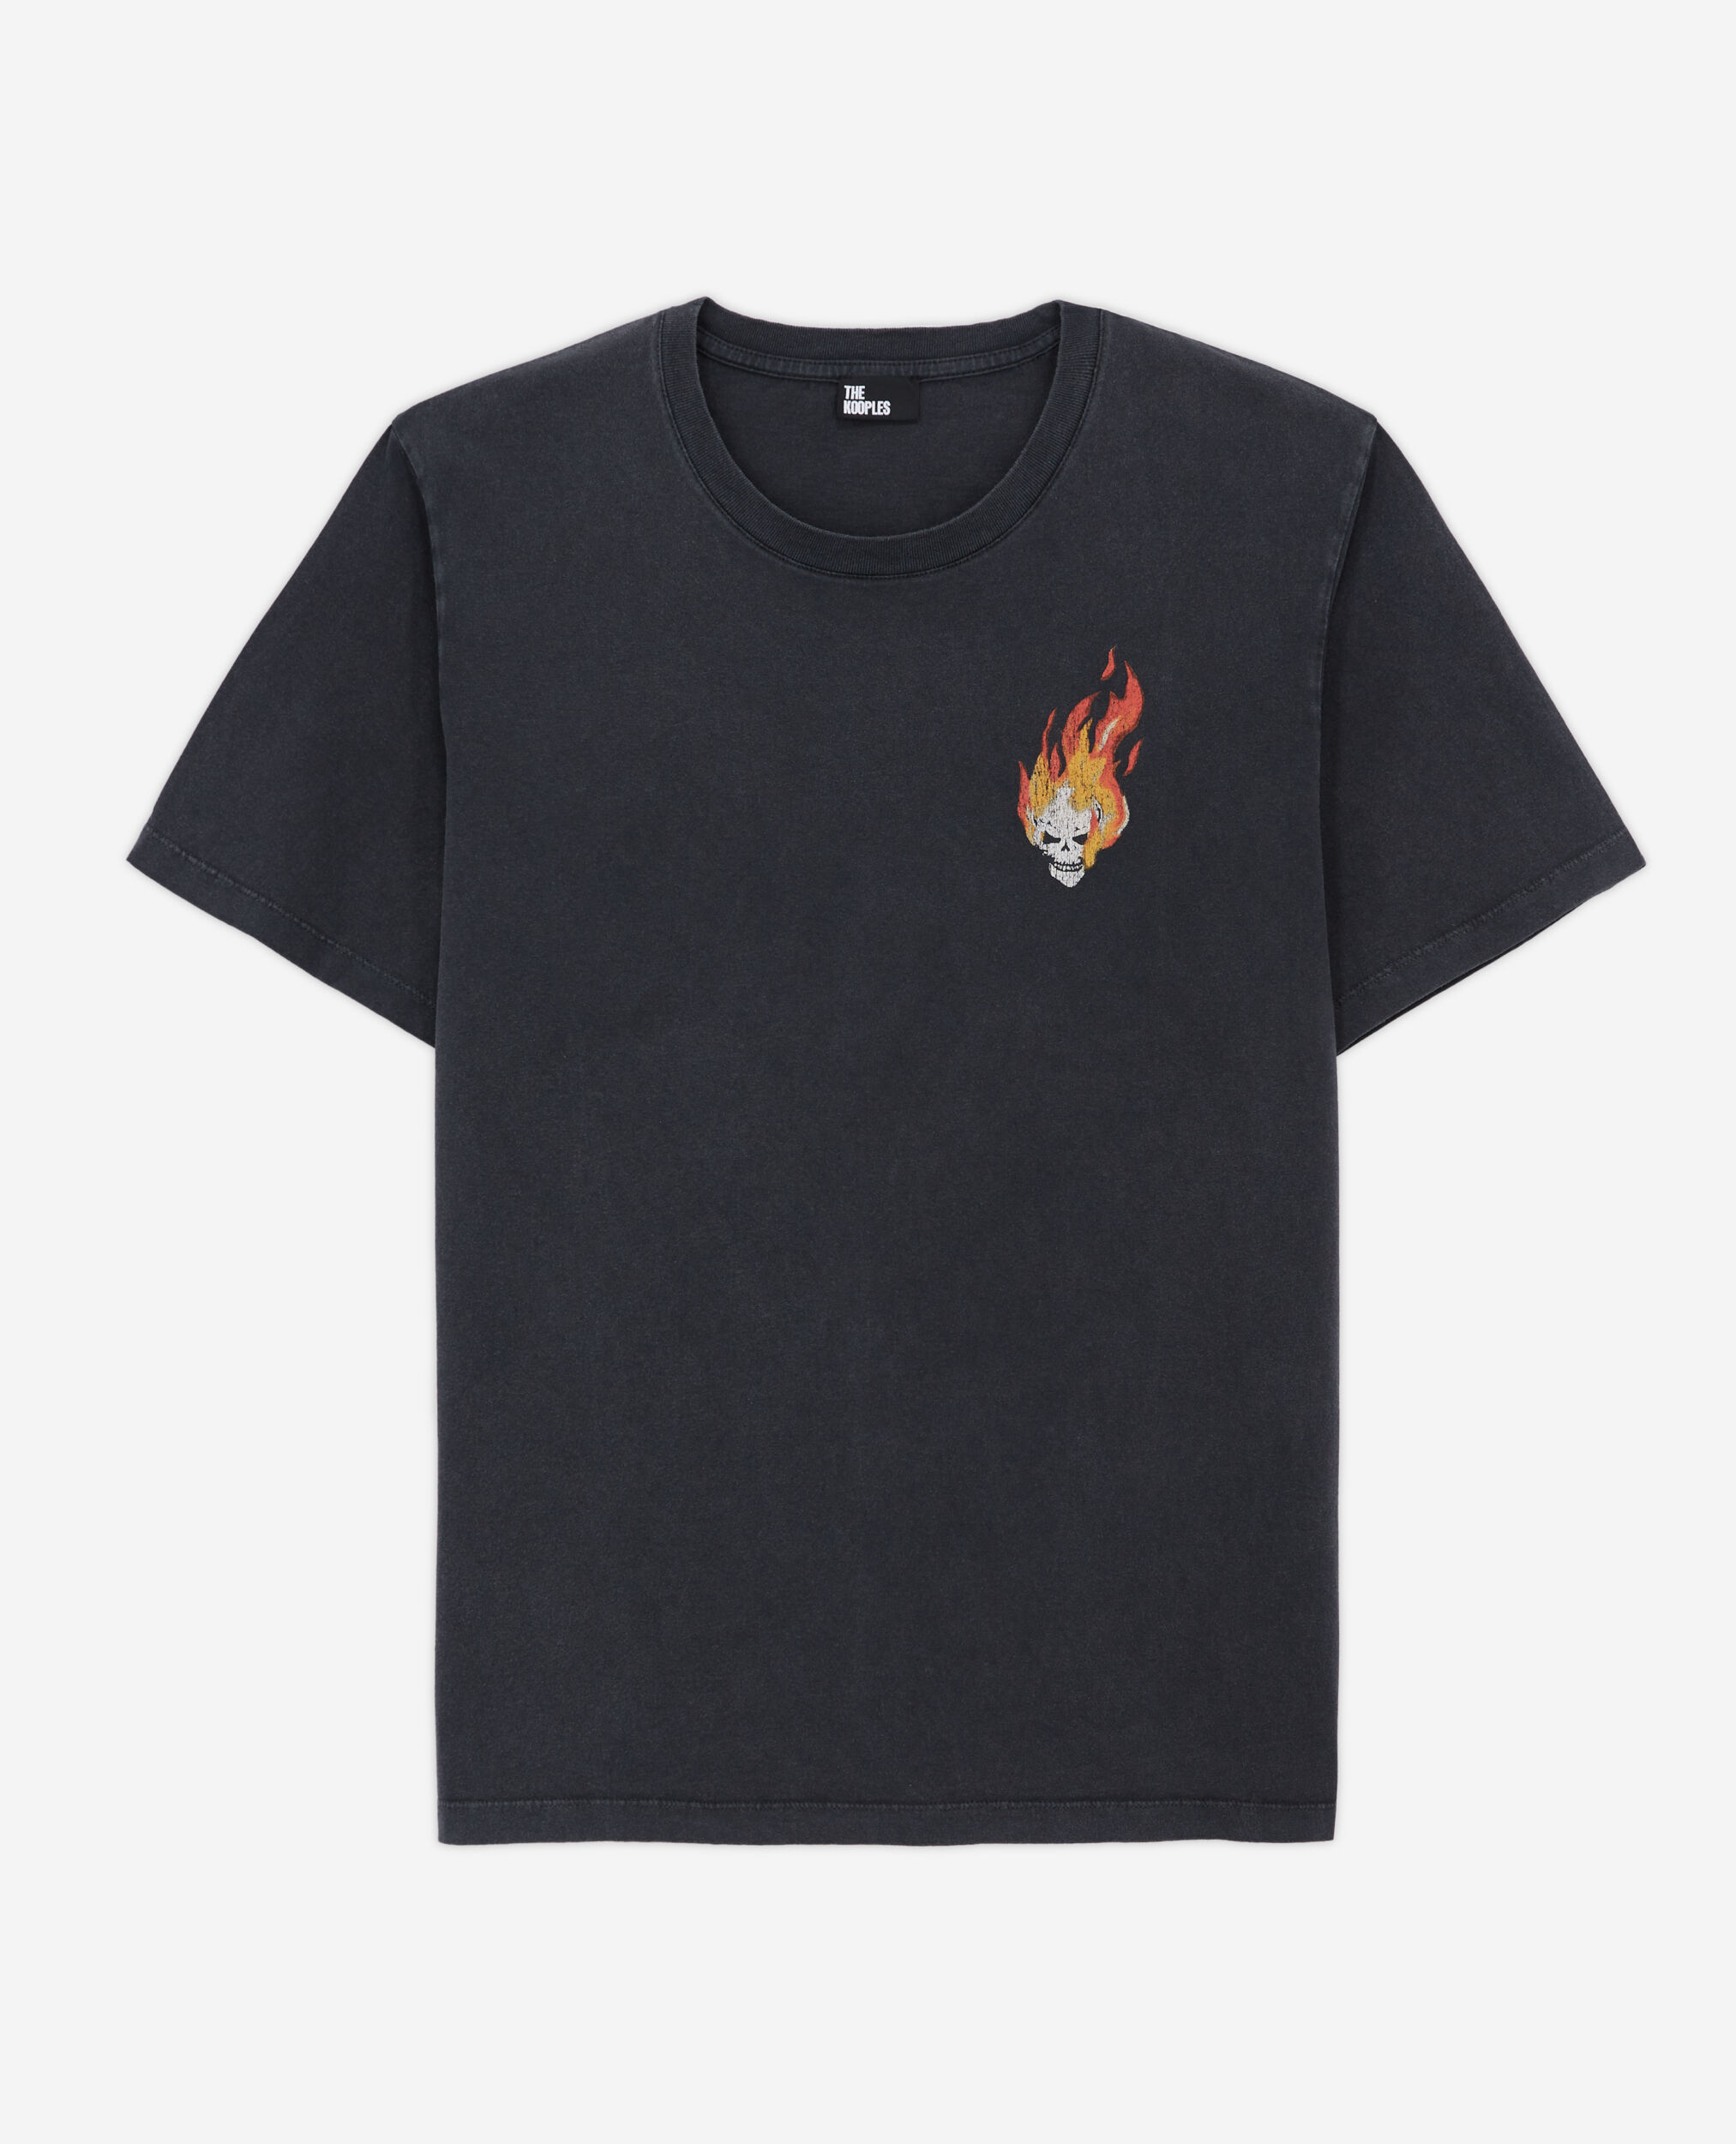 T-shirt noir sérigraphié Skull on fire, BLACK WASHED, hi-res image number null